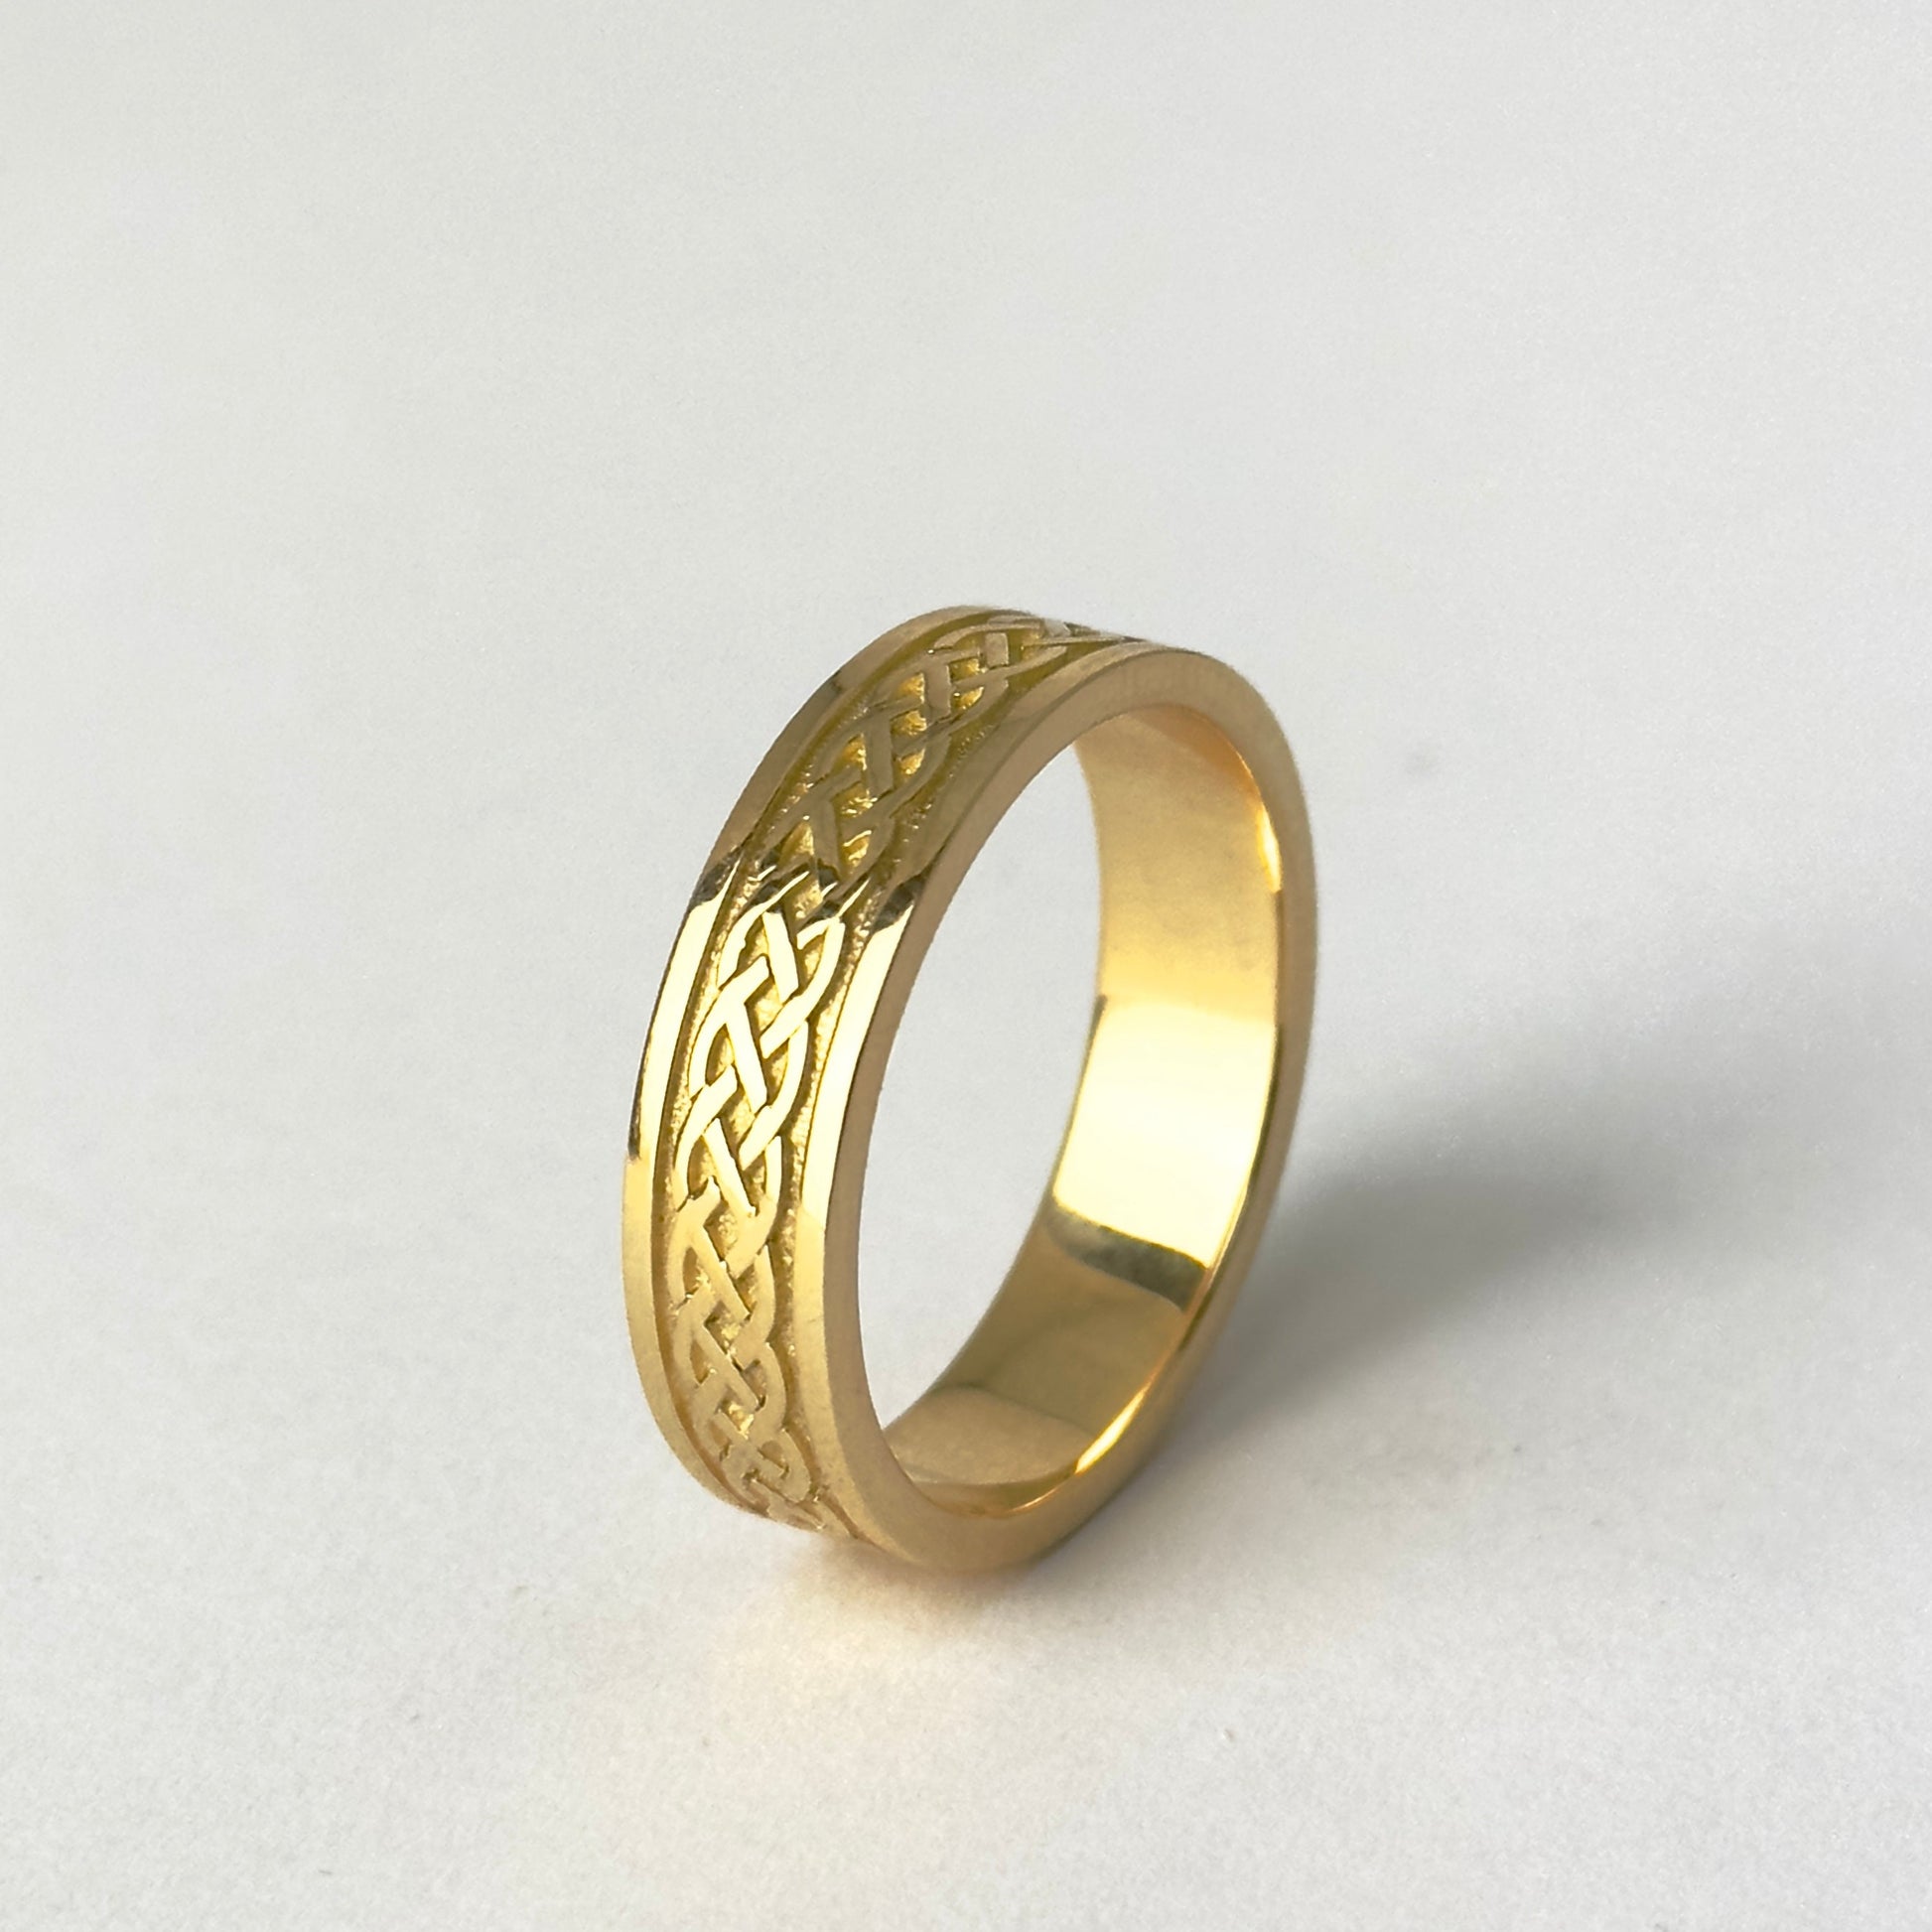 Irish ring 